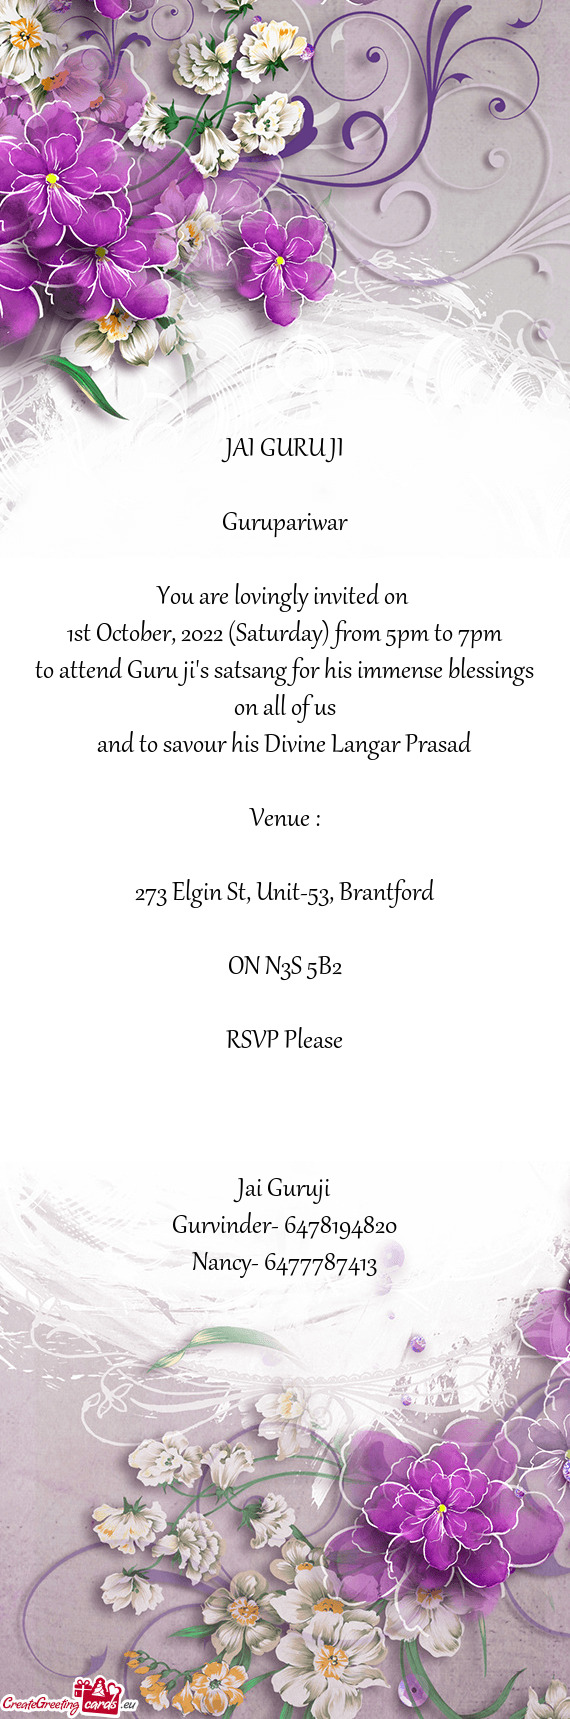 To attend Guru ji